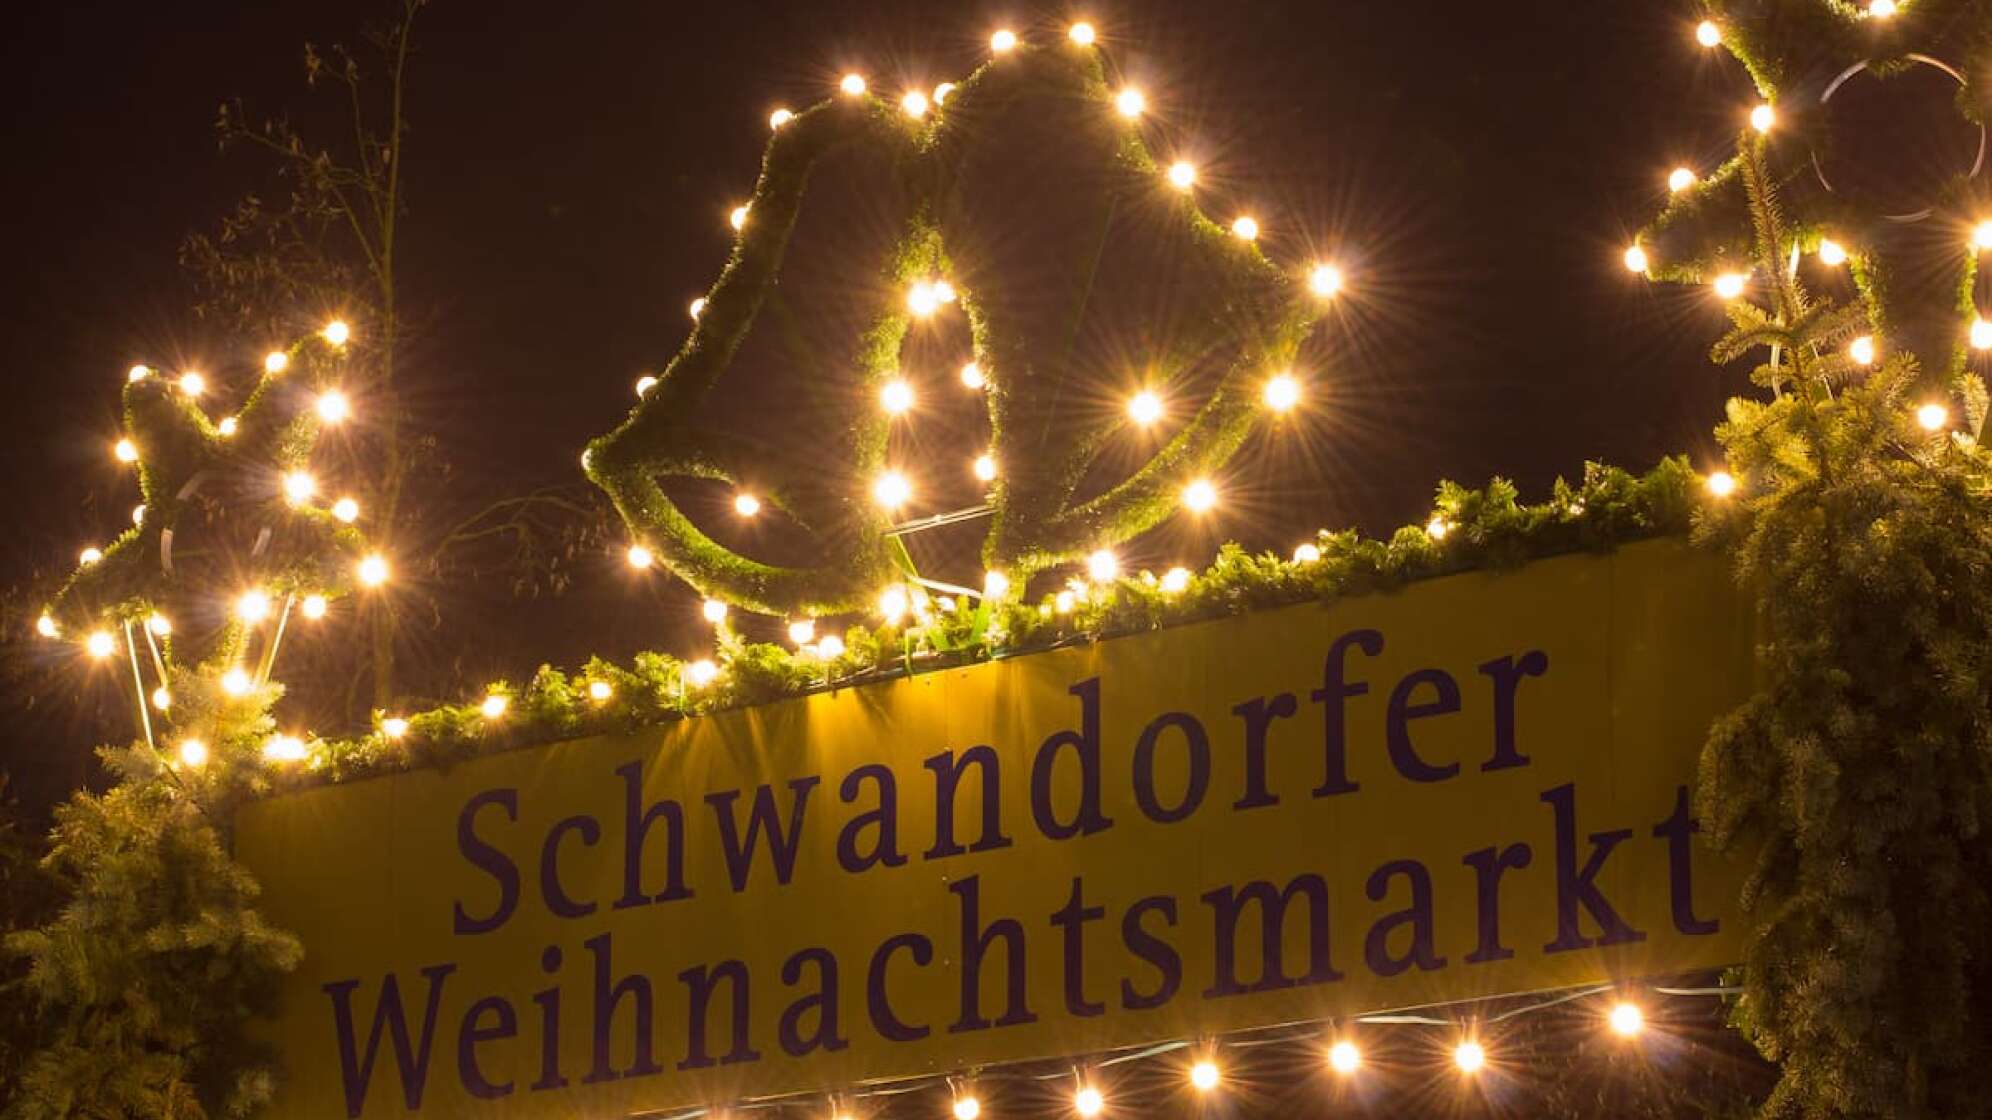 Schild vom Weihnachtsmarkt in Schwandorf